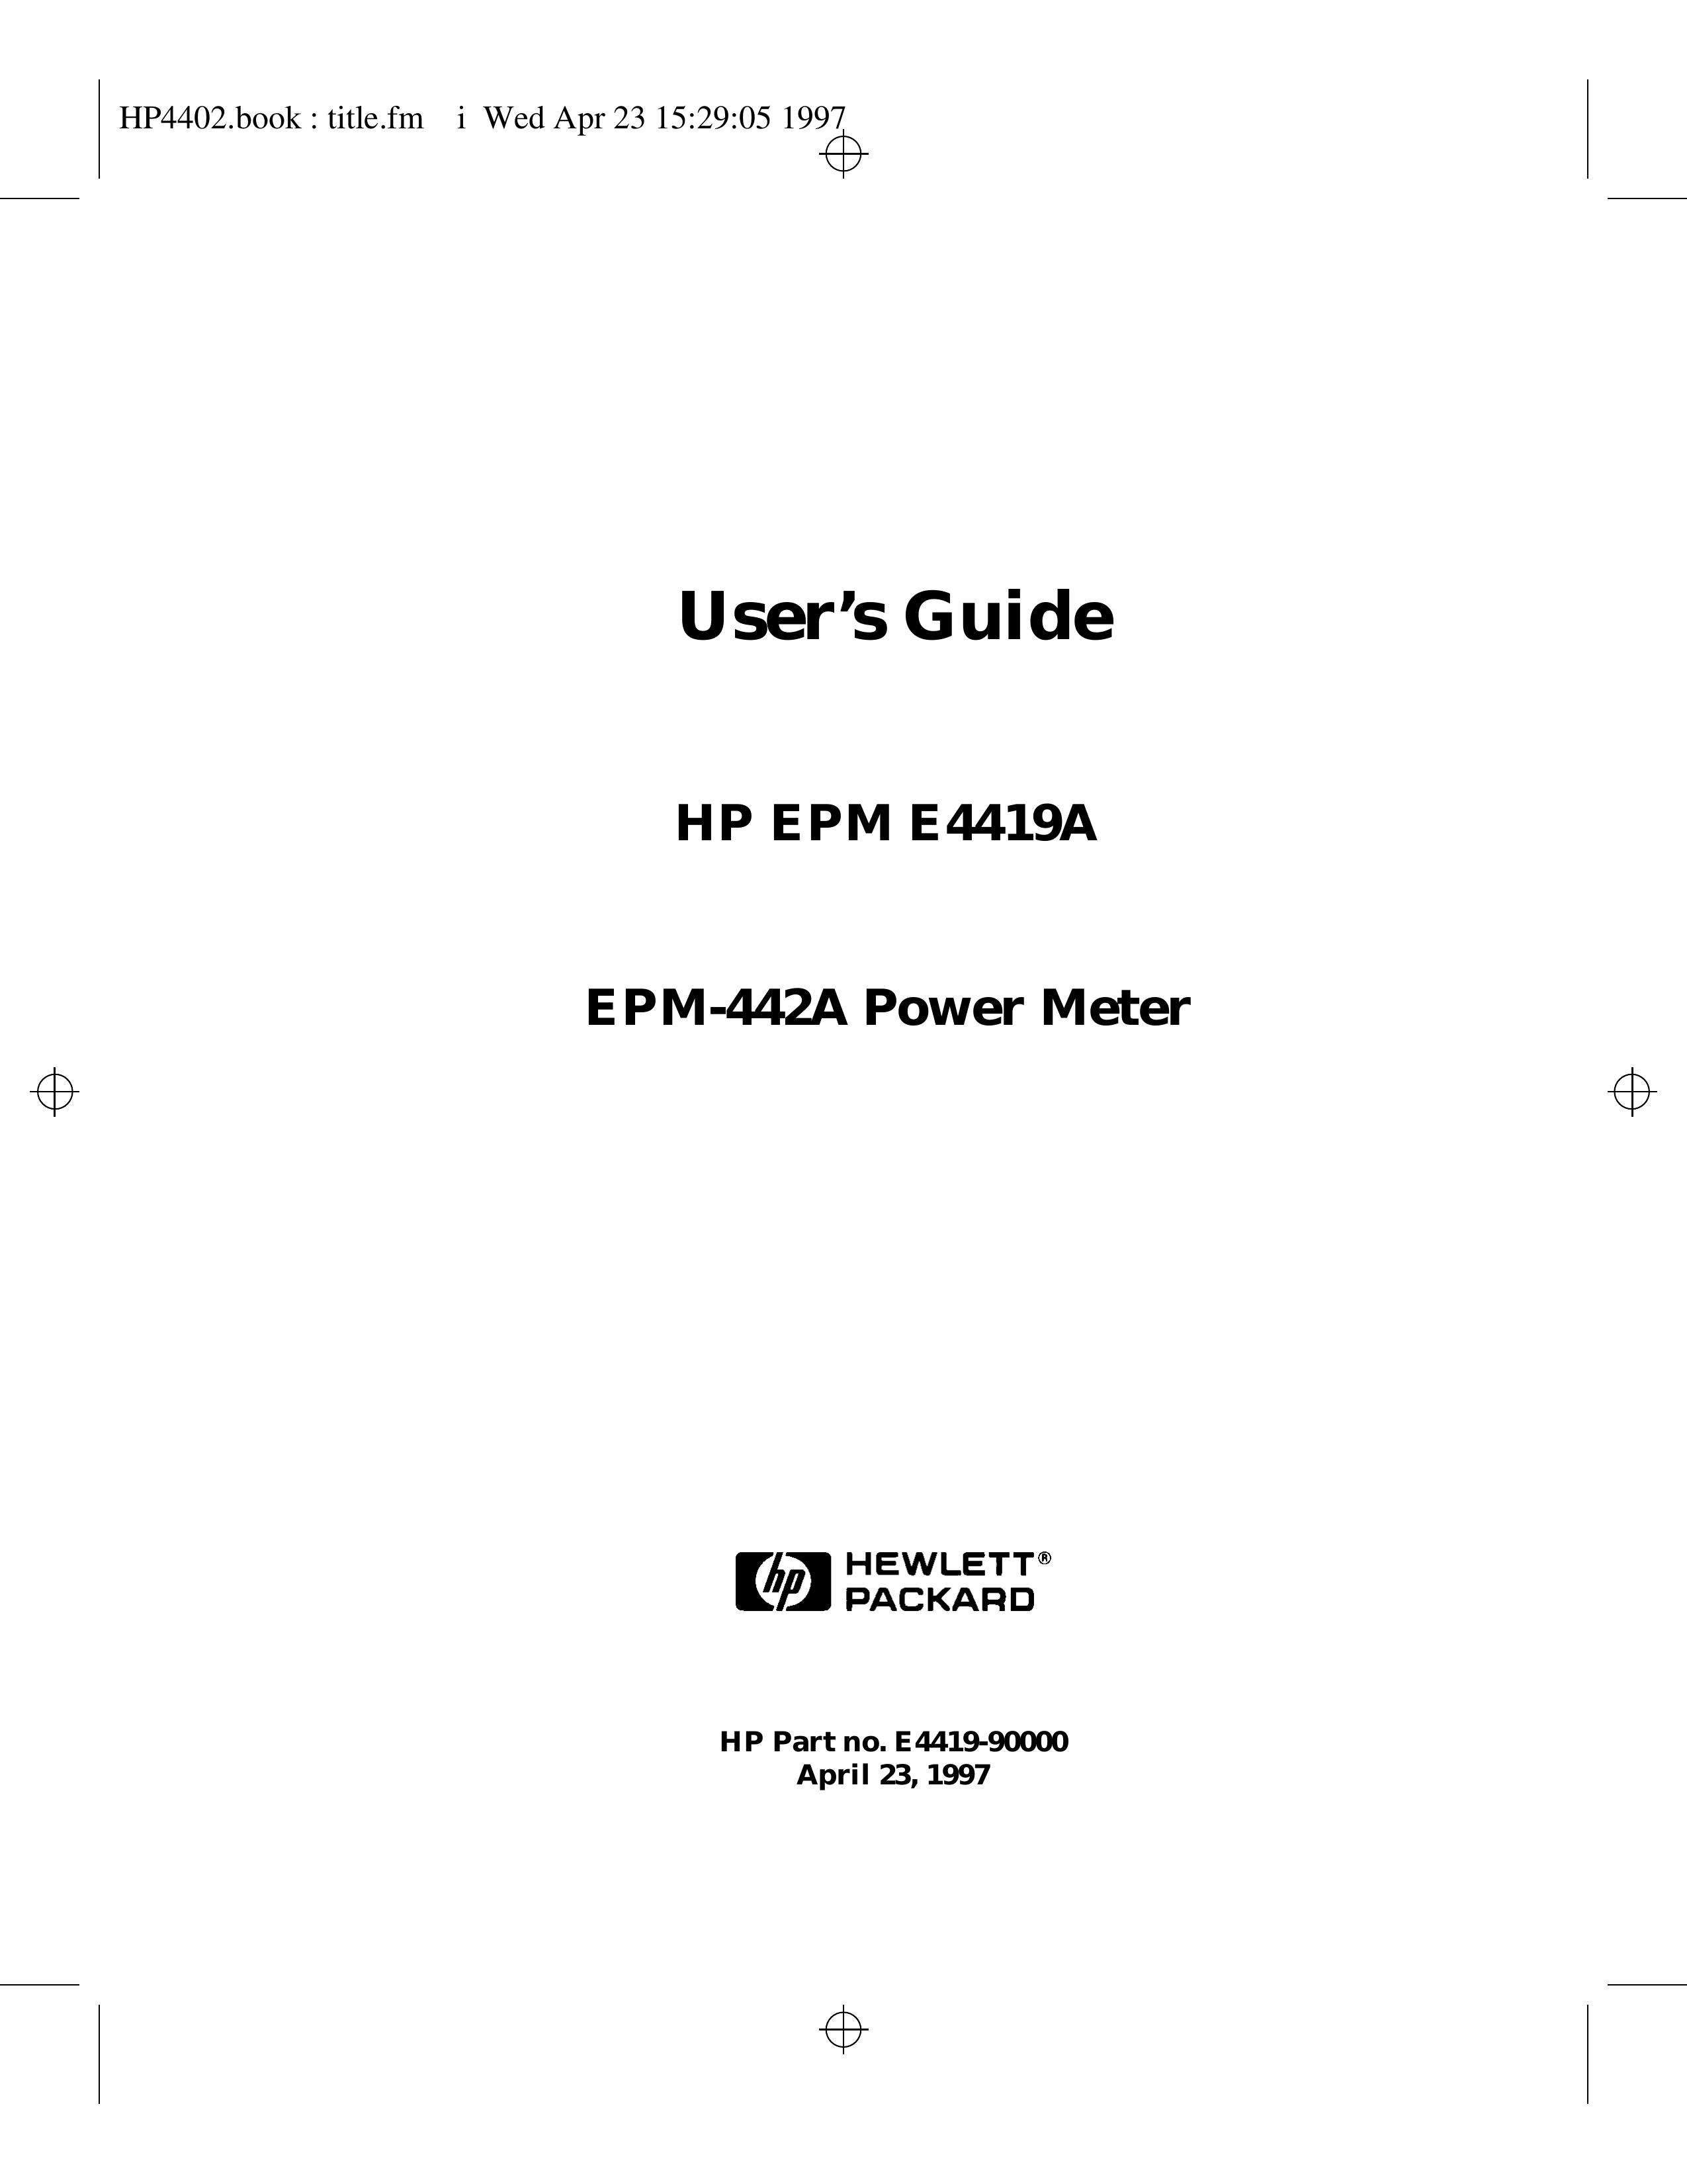 HP (Hewlett-Packard) EPM-442A Music Mixer User Manual